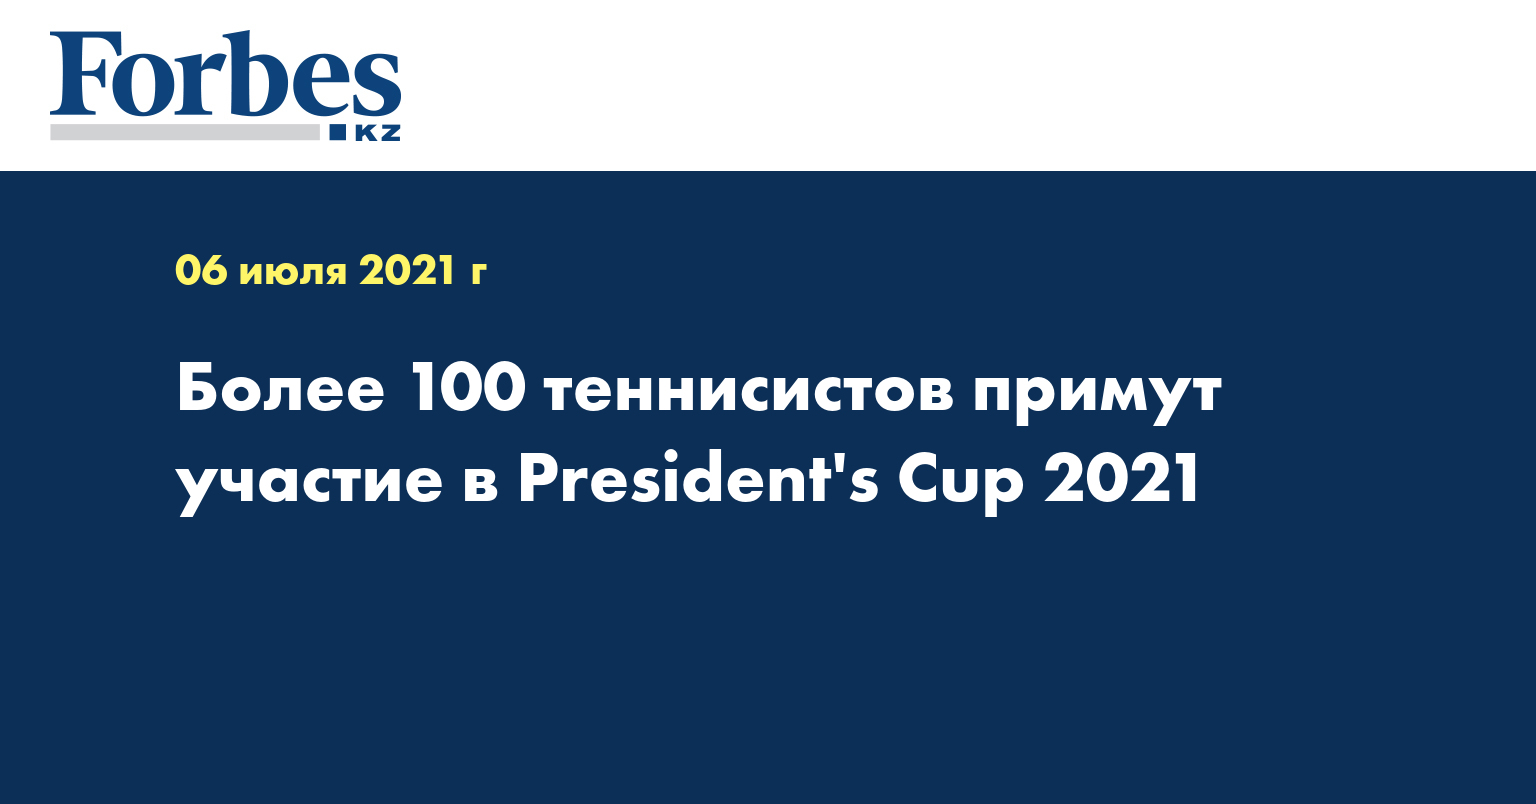 Более 100 теннисистов примут участие в President's Cup 2021  